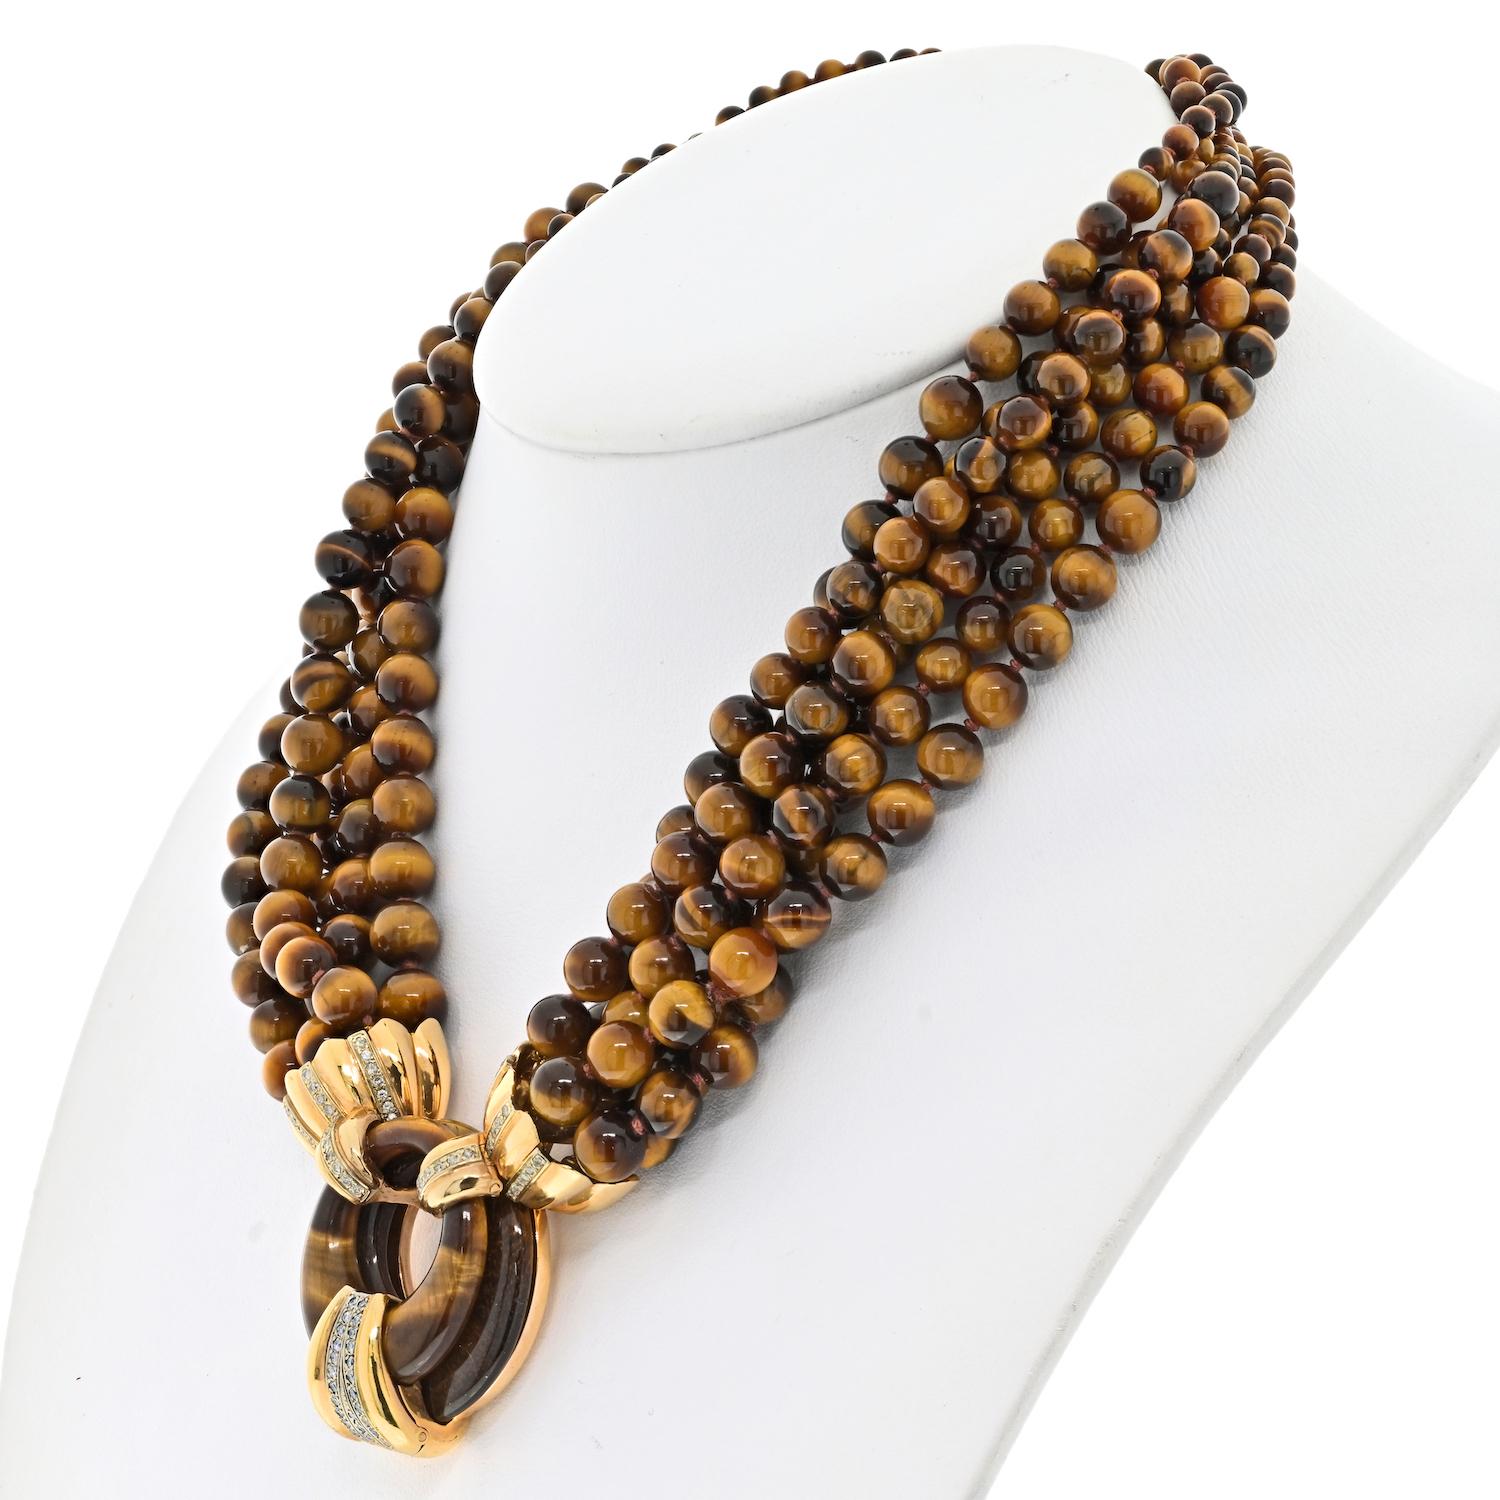 Die 14K Gelbgold Tiger Eye Multi-Strand Bead Diamond Necklace ist ein wirklich exquisites Schmuckstück. Die Halskette besteht aus sechs Strängen wunderschön gearbeiteter Tigeraugen-Perlen, die jeweils ein einzigartiges Muster aufweisen und einen